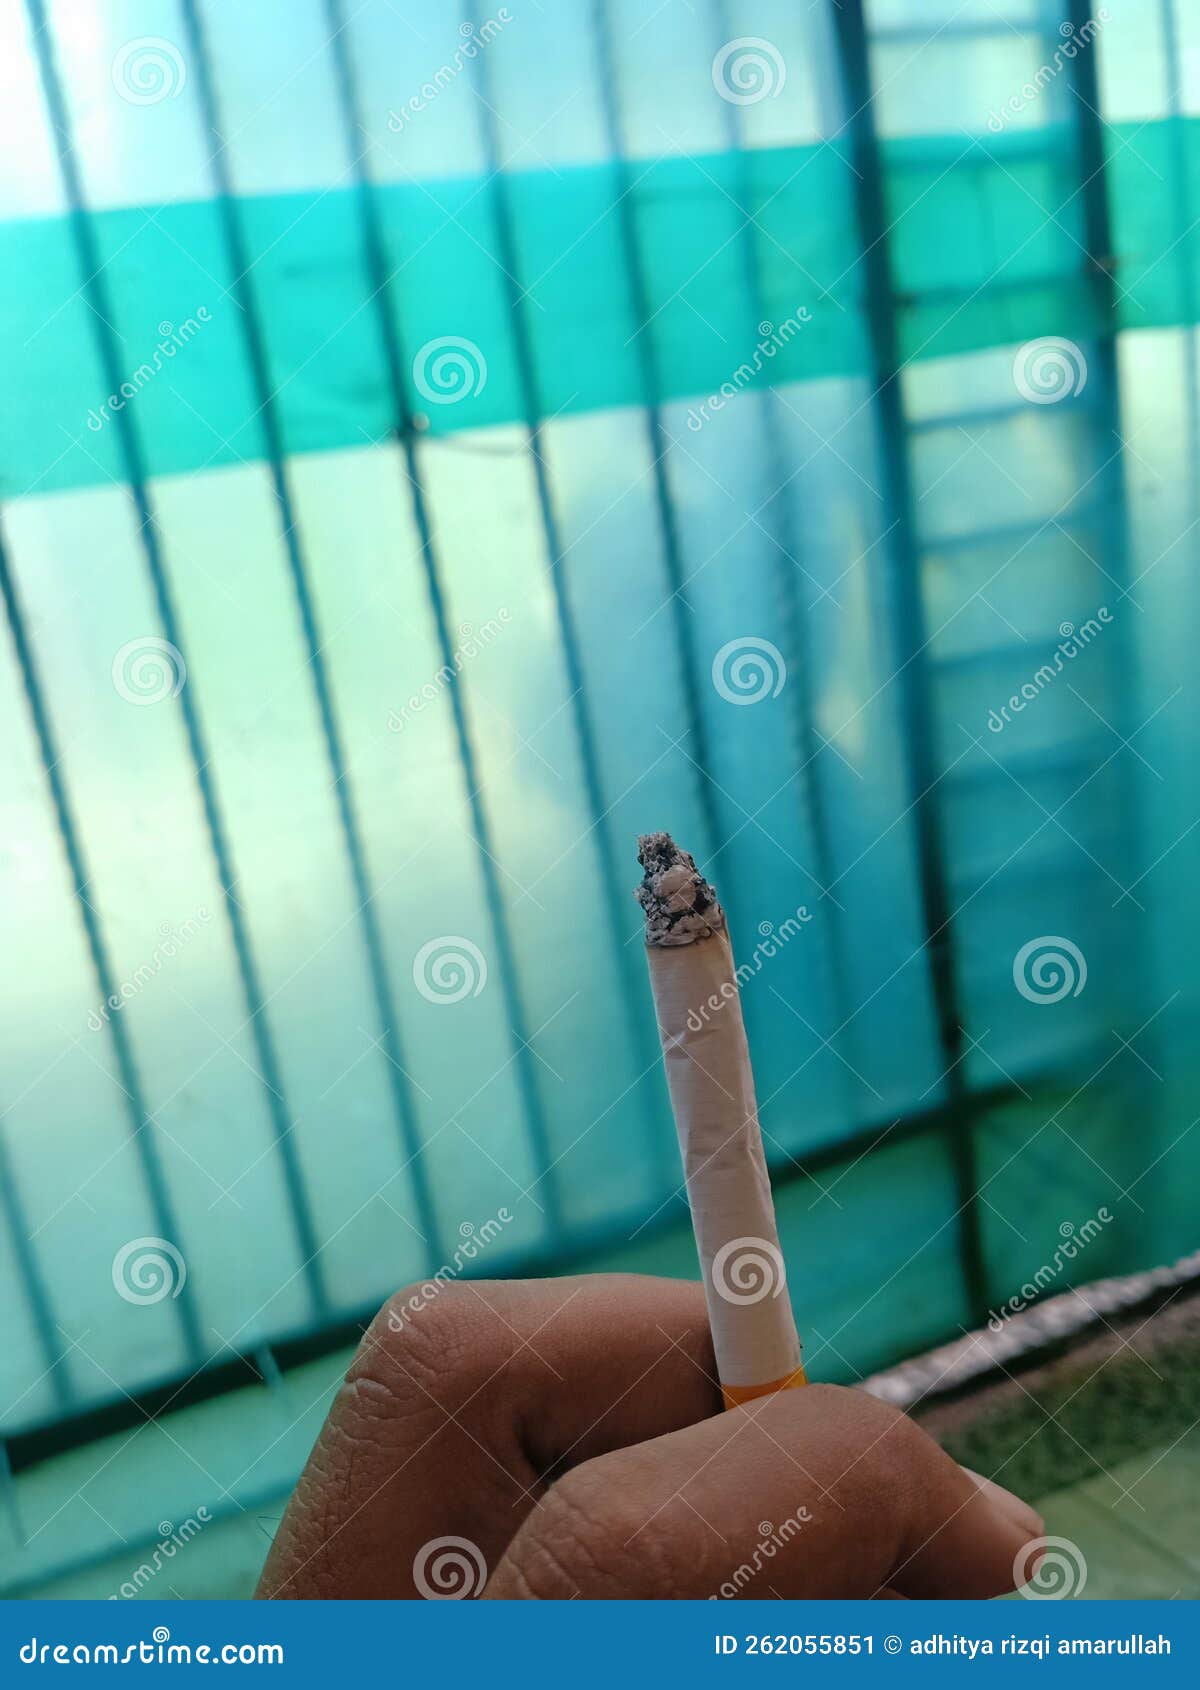 tobacco cigarette by envio